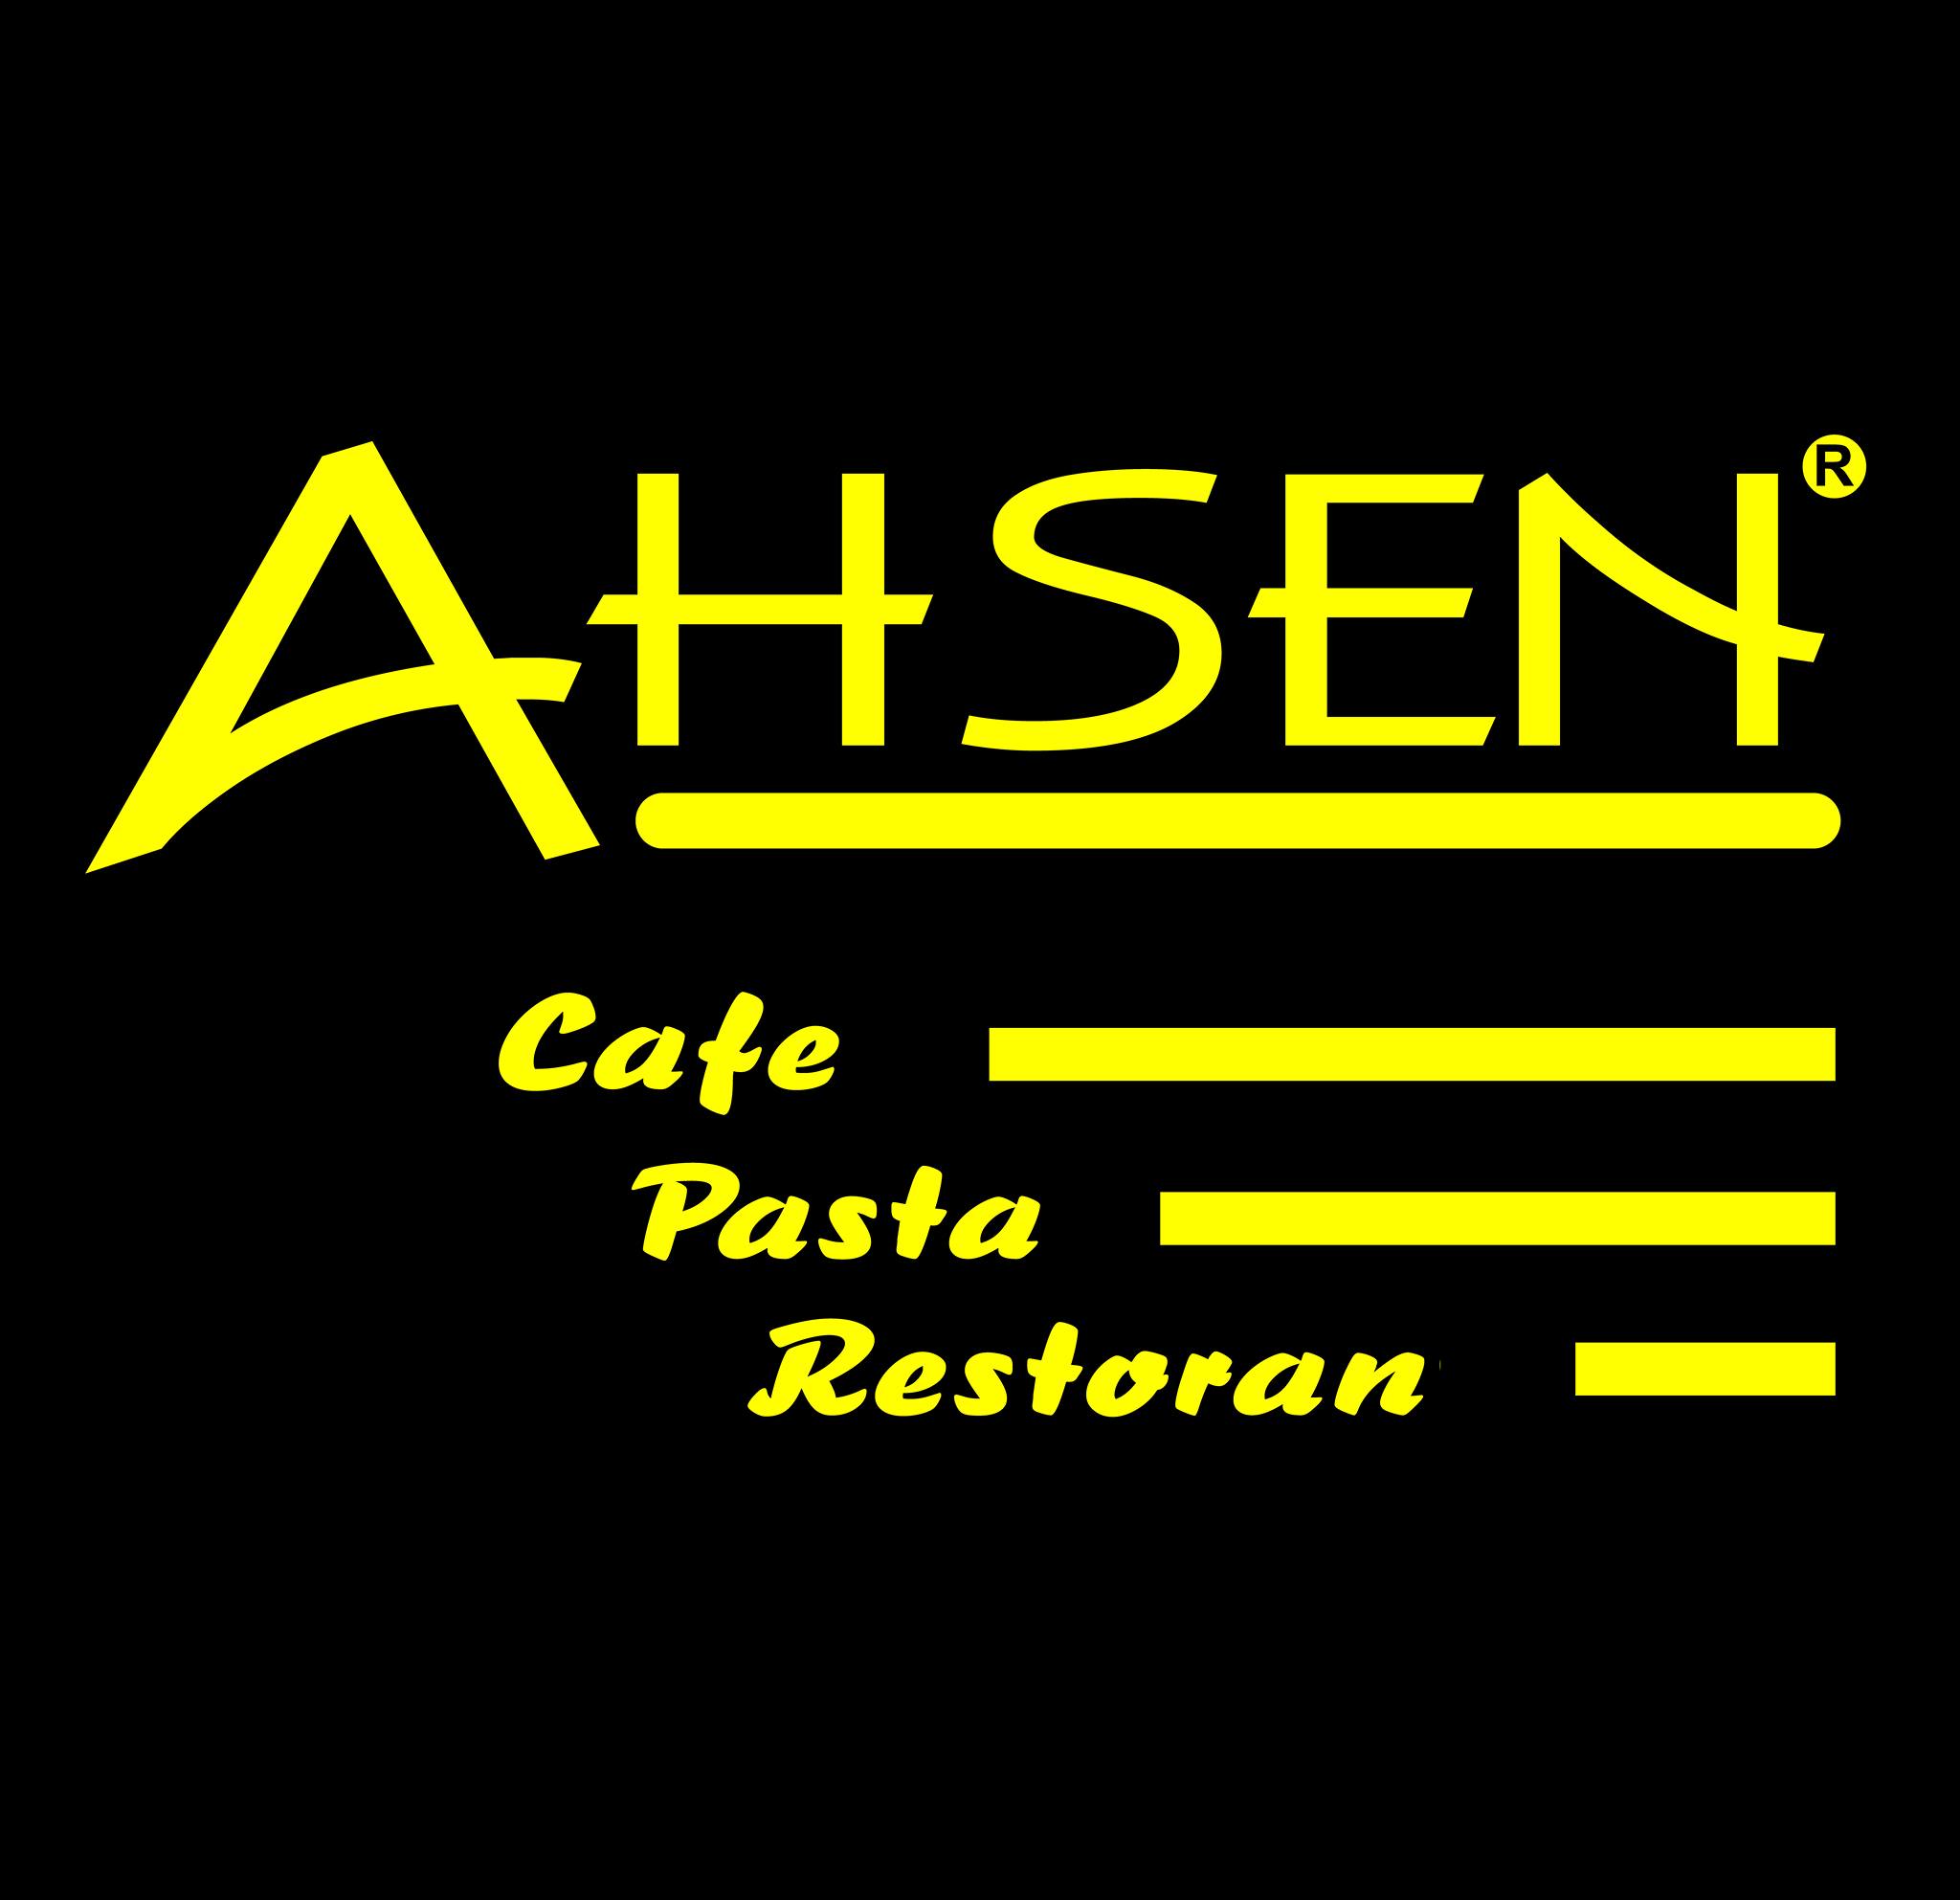 AHSEN PASTA CAFE RESTAURANT